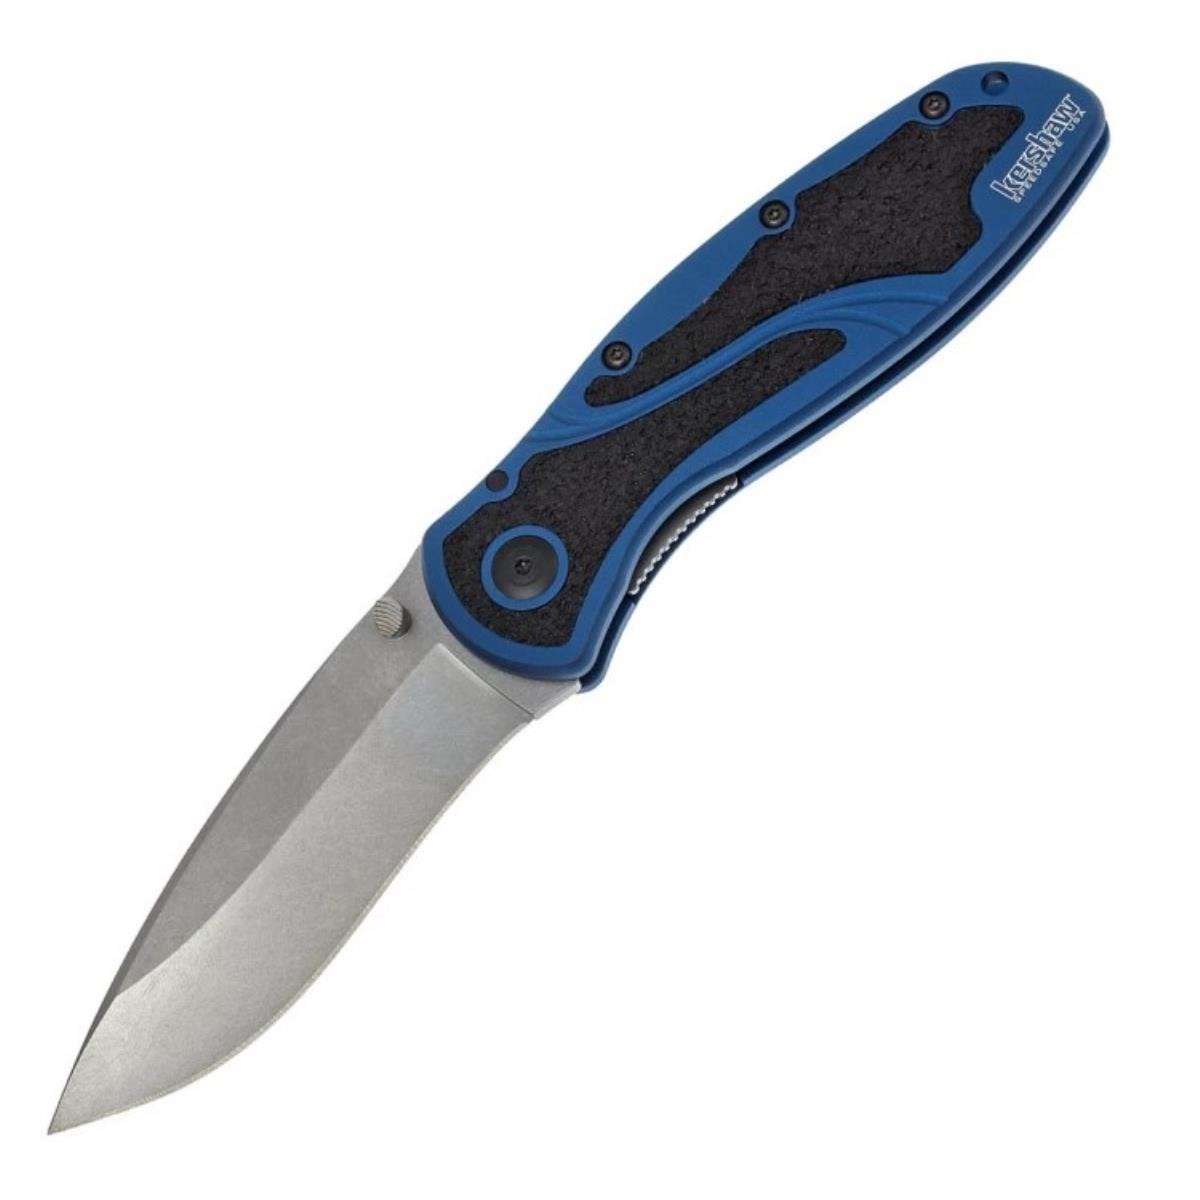 Нож склад., алюм. рук-ть синяя, клинок Sandvik 14C28N - K1670NBSW Blur KERSHAW